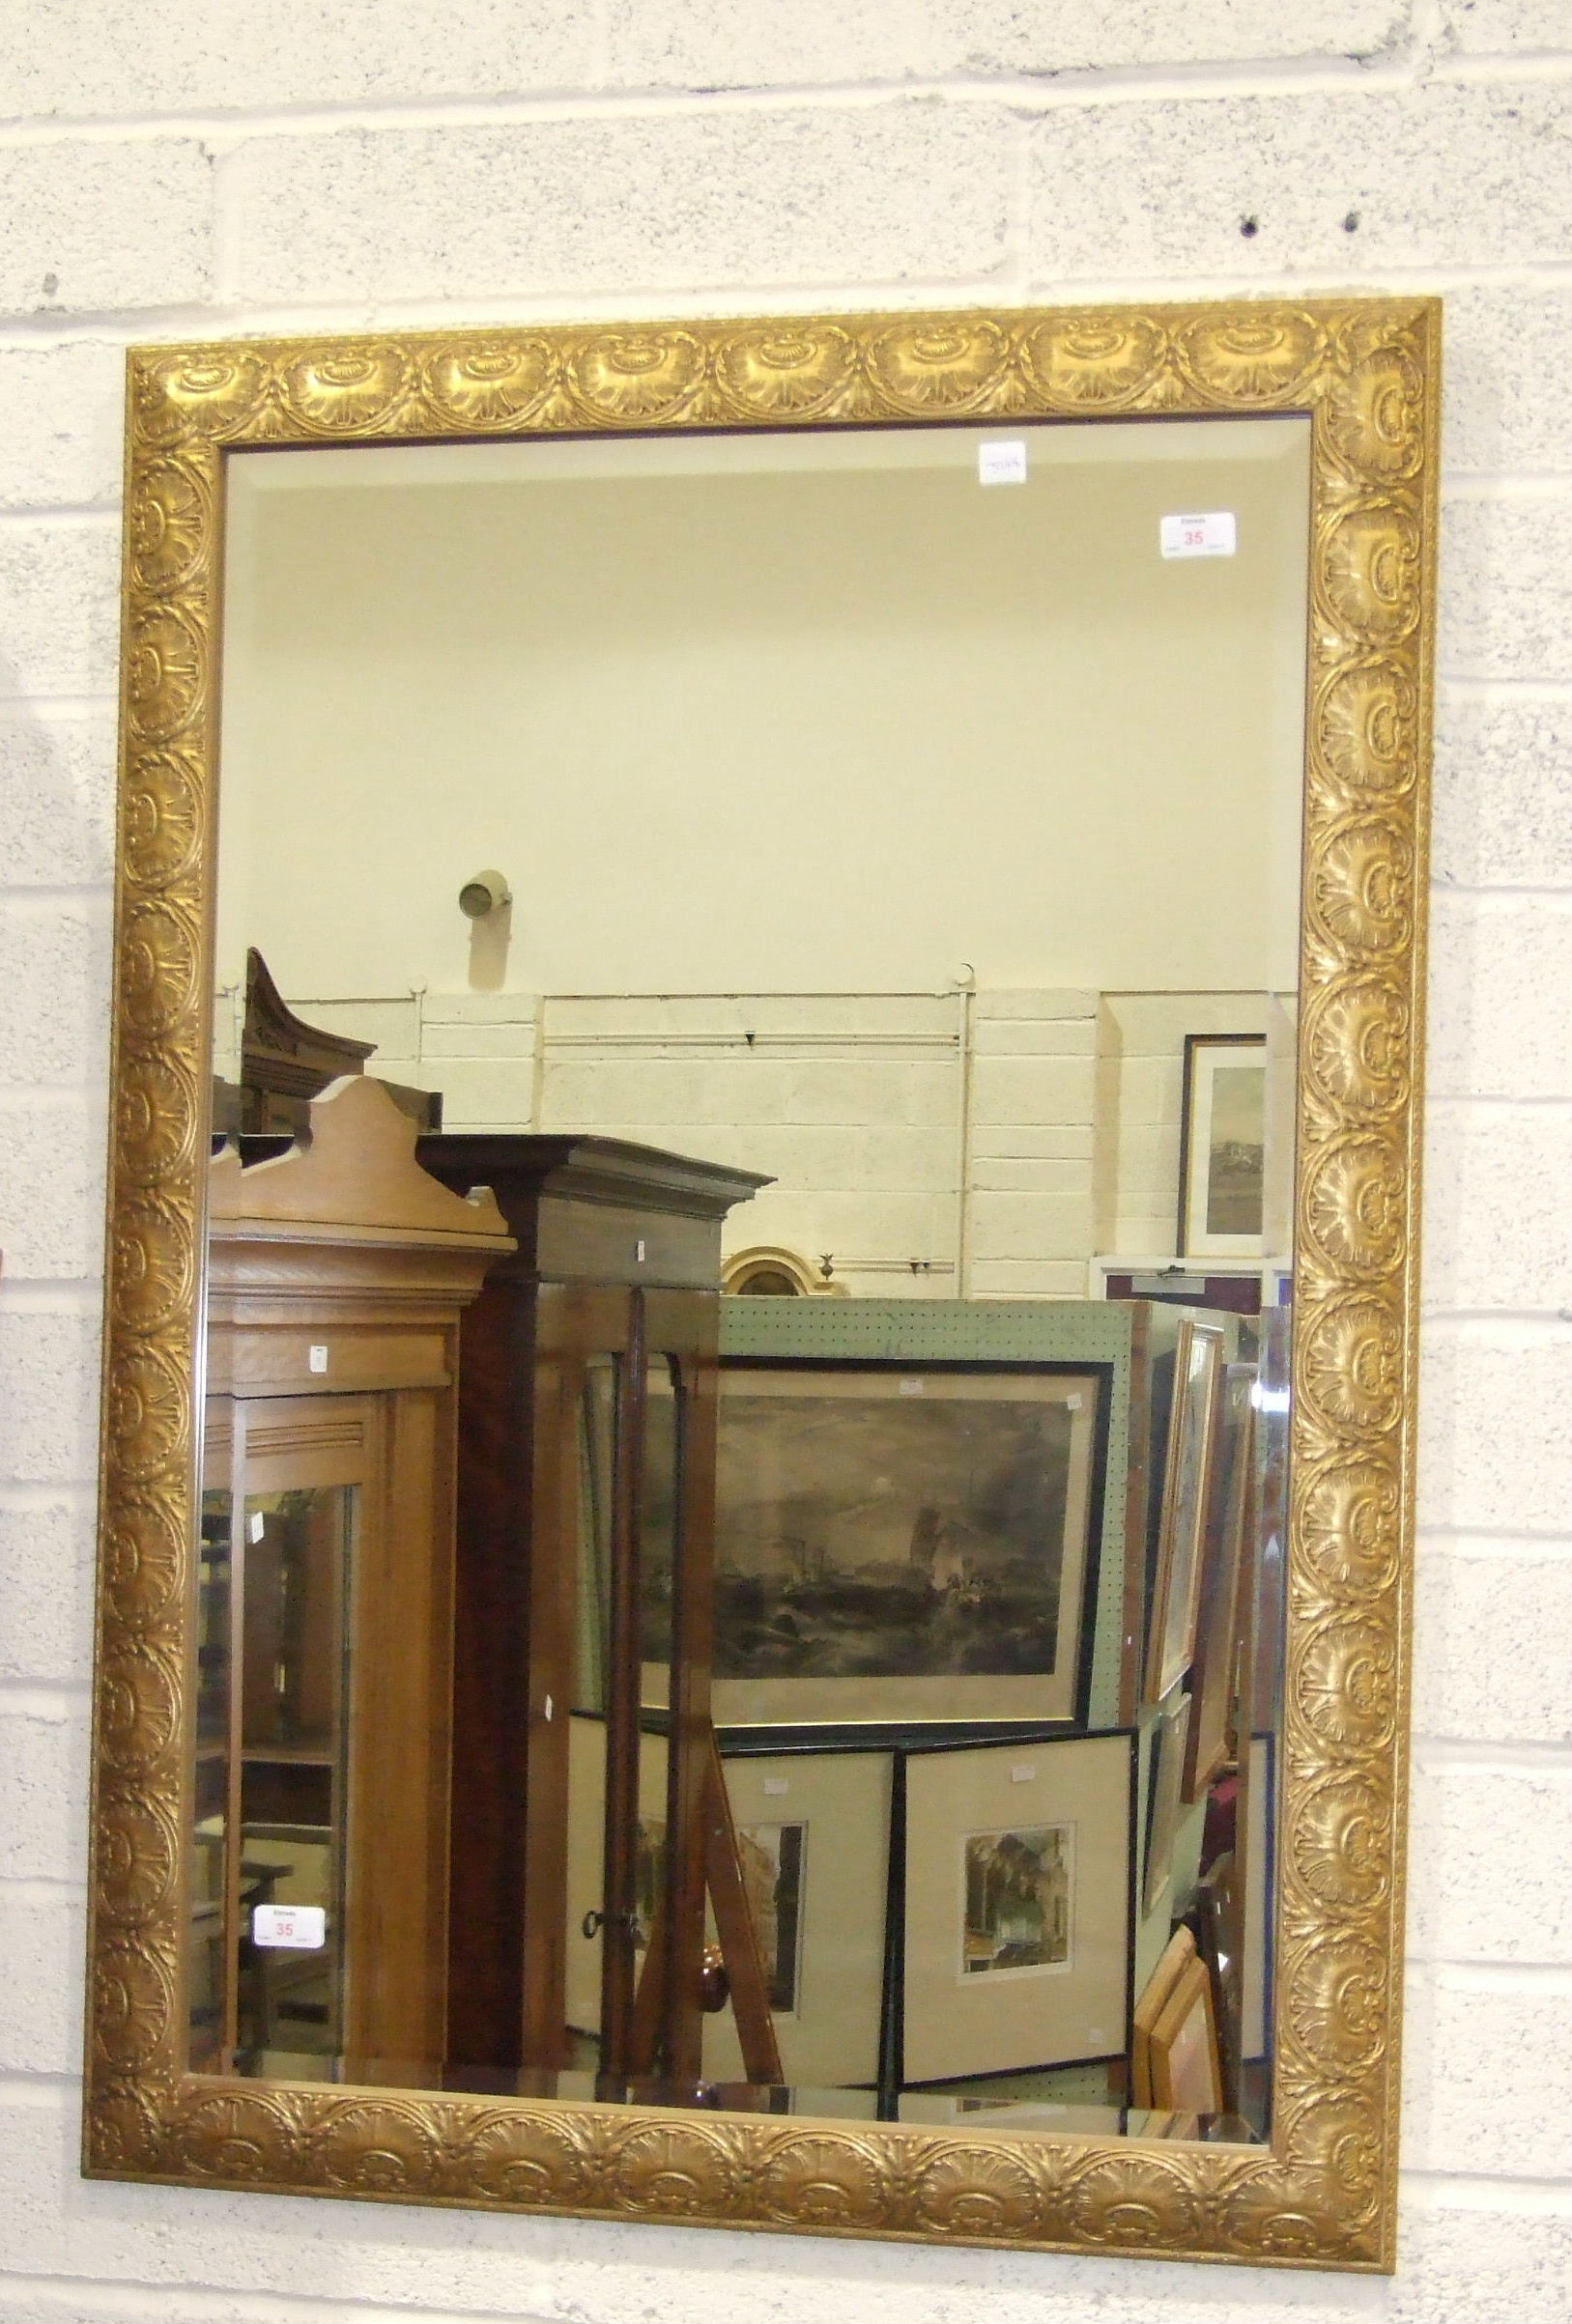 A modern gilt-framed bevelled wall mirror, 105 x 73cm.